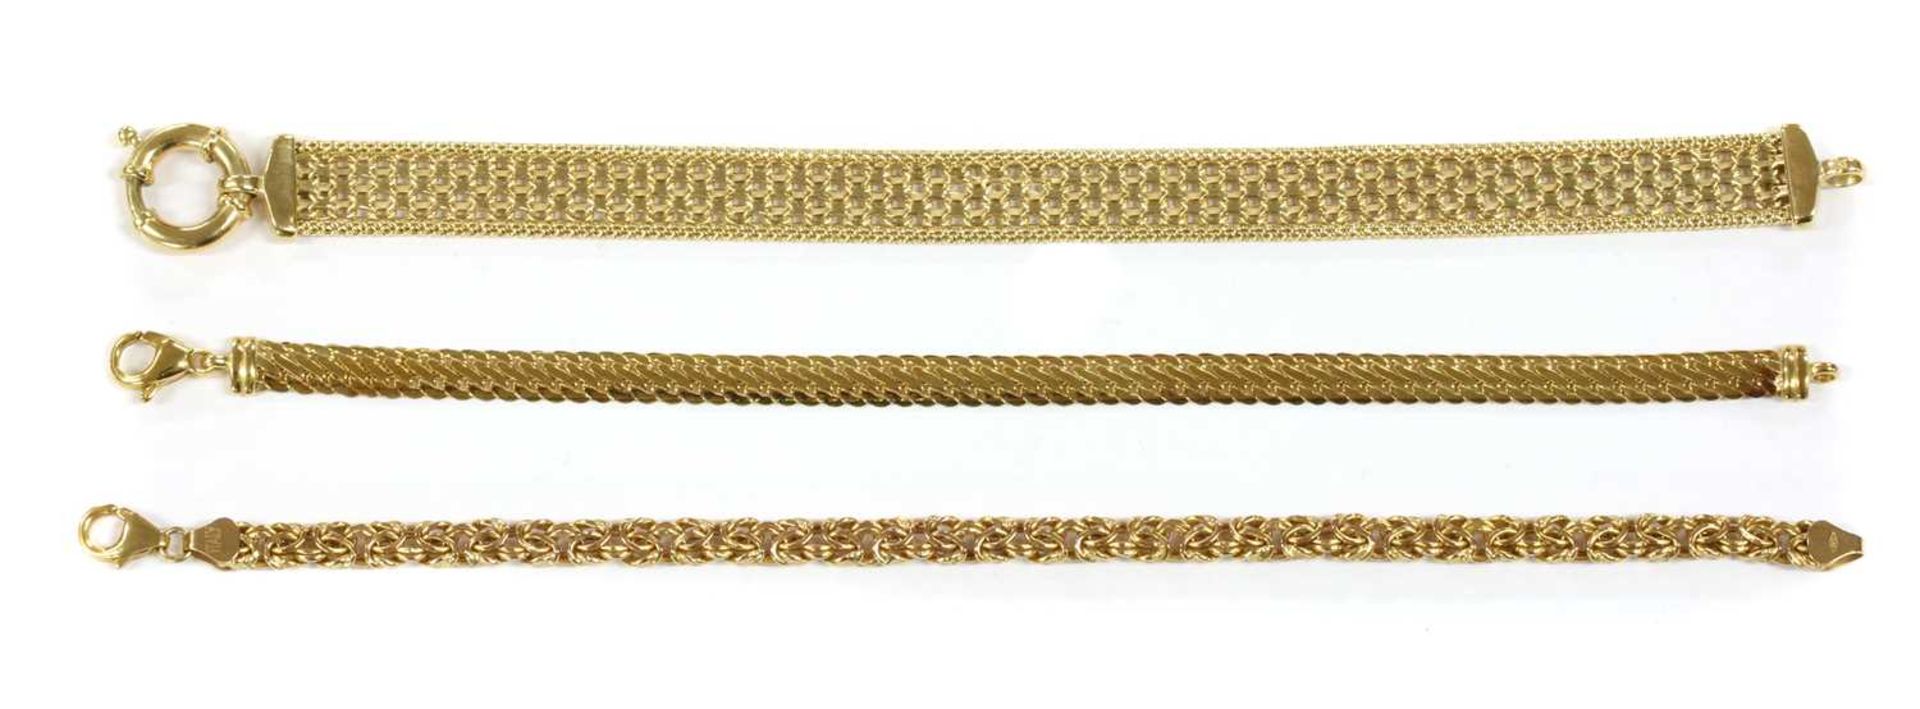 A 9ct gold Bismark link bracelet,